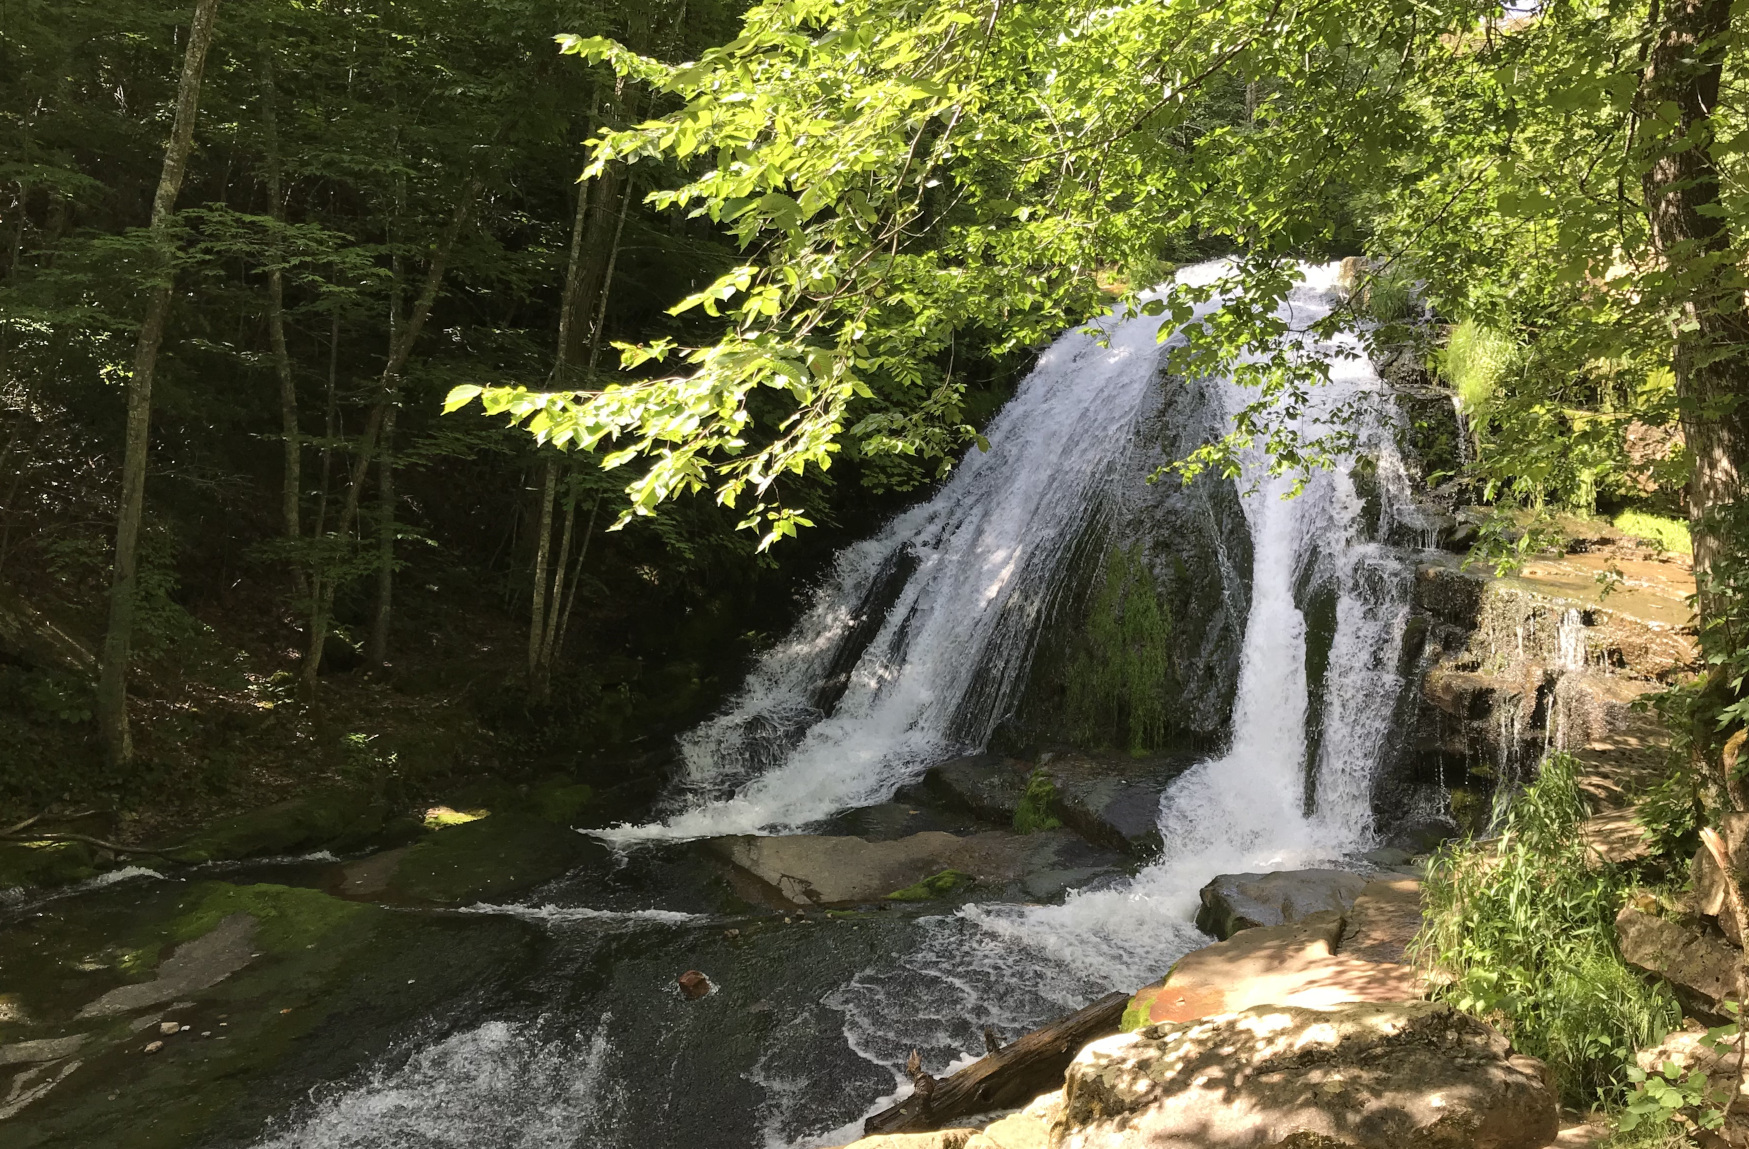 Roaring Run Waterfall - Virginia